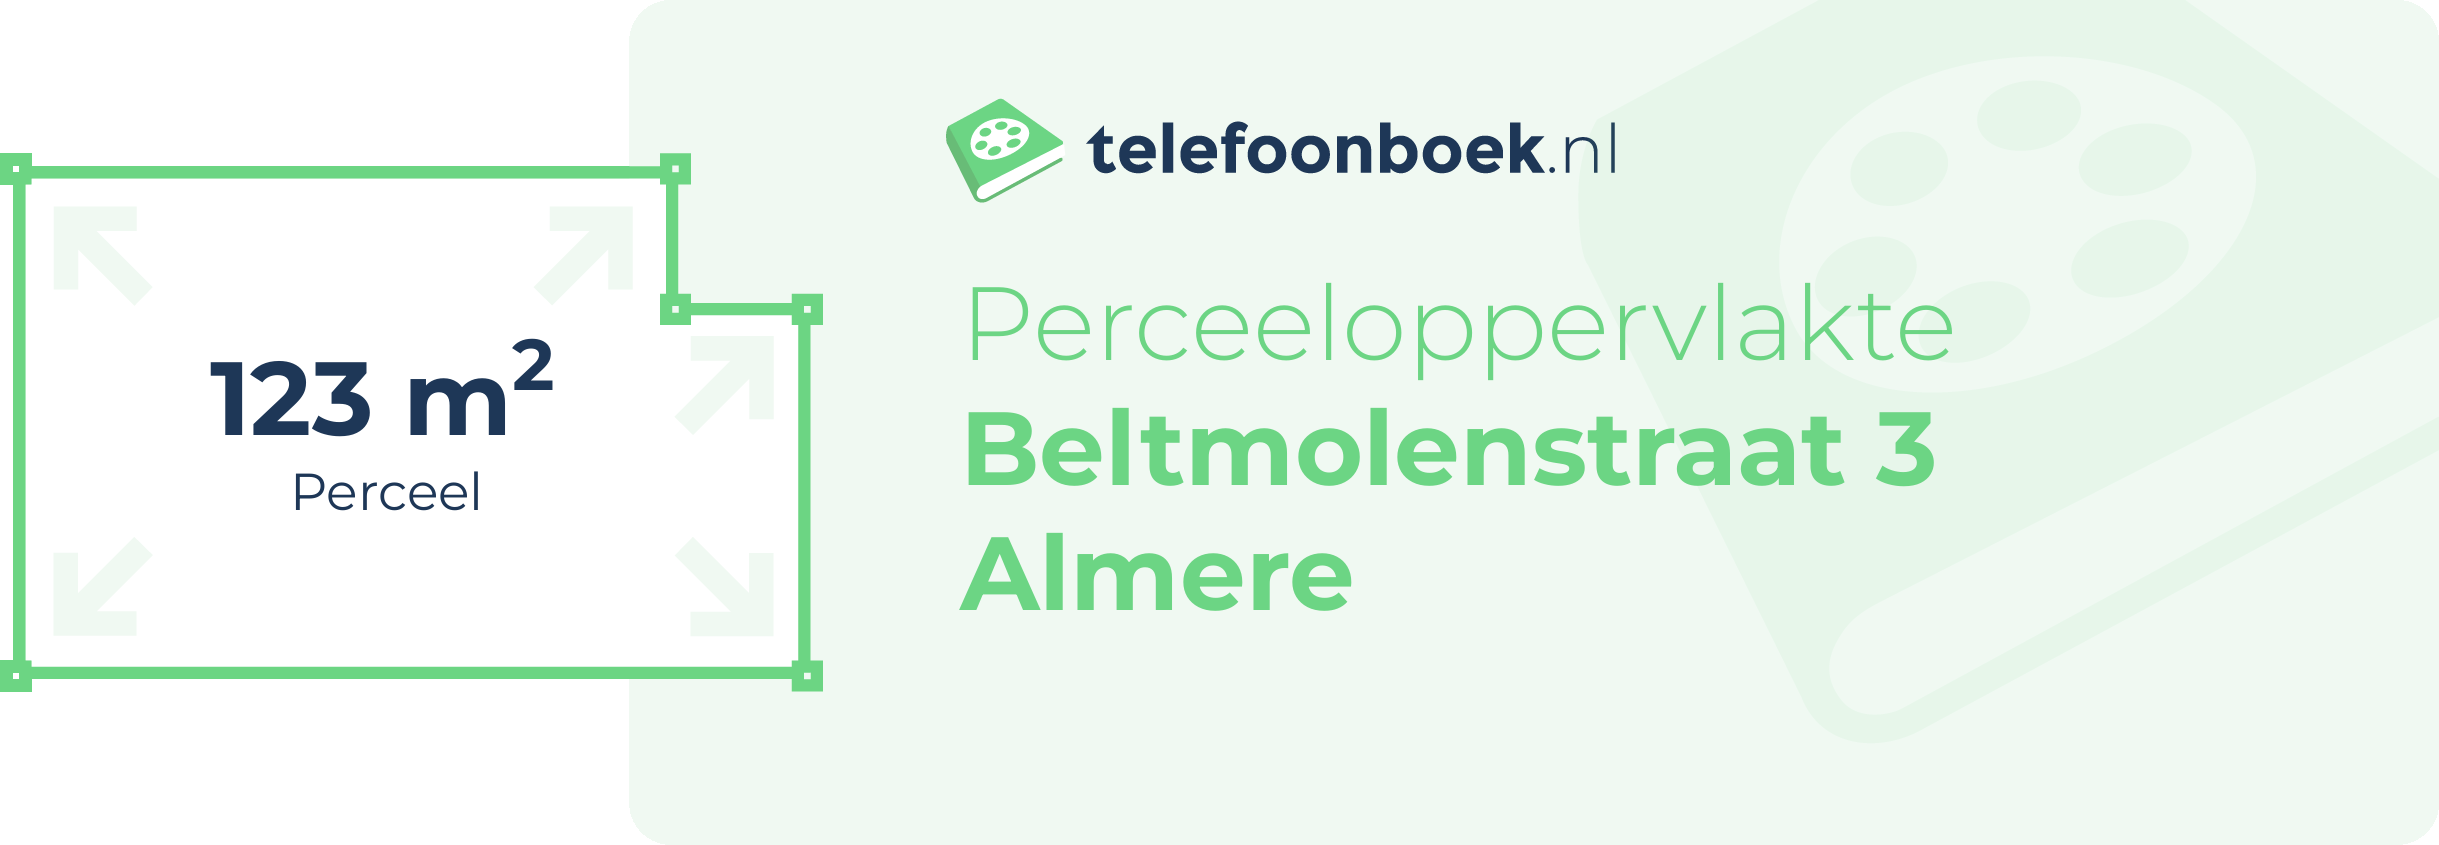 Perceeloppervlakte Beltmolenstraat 3 Almere